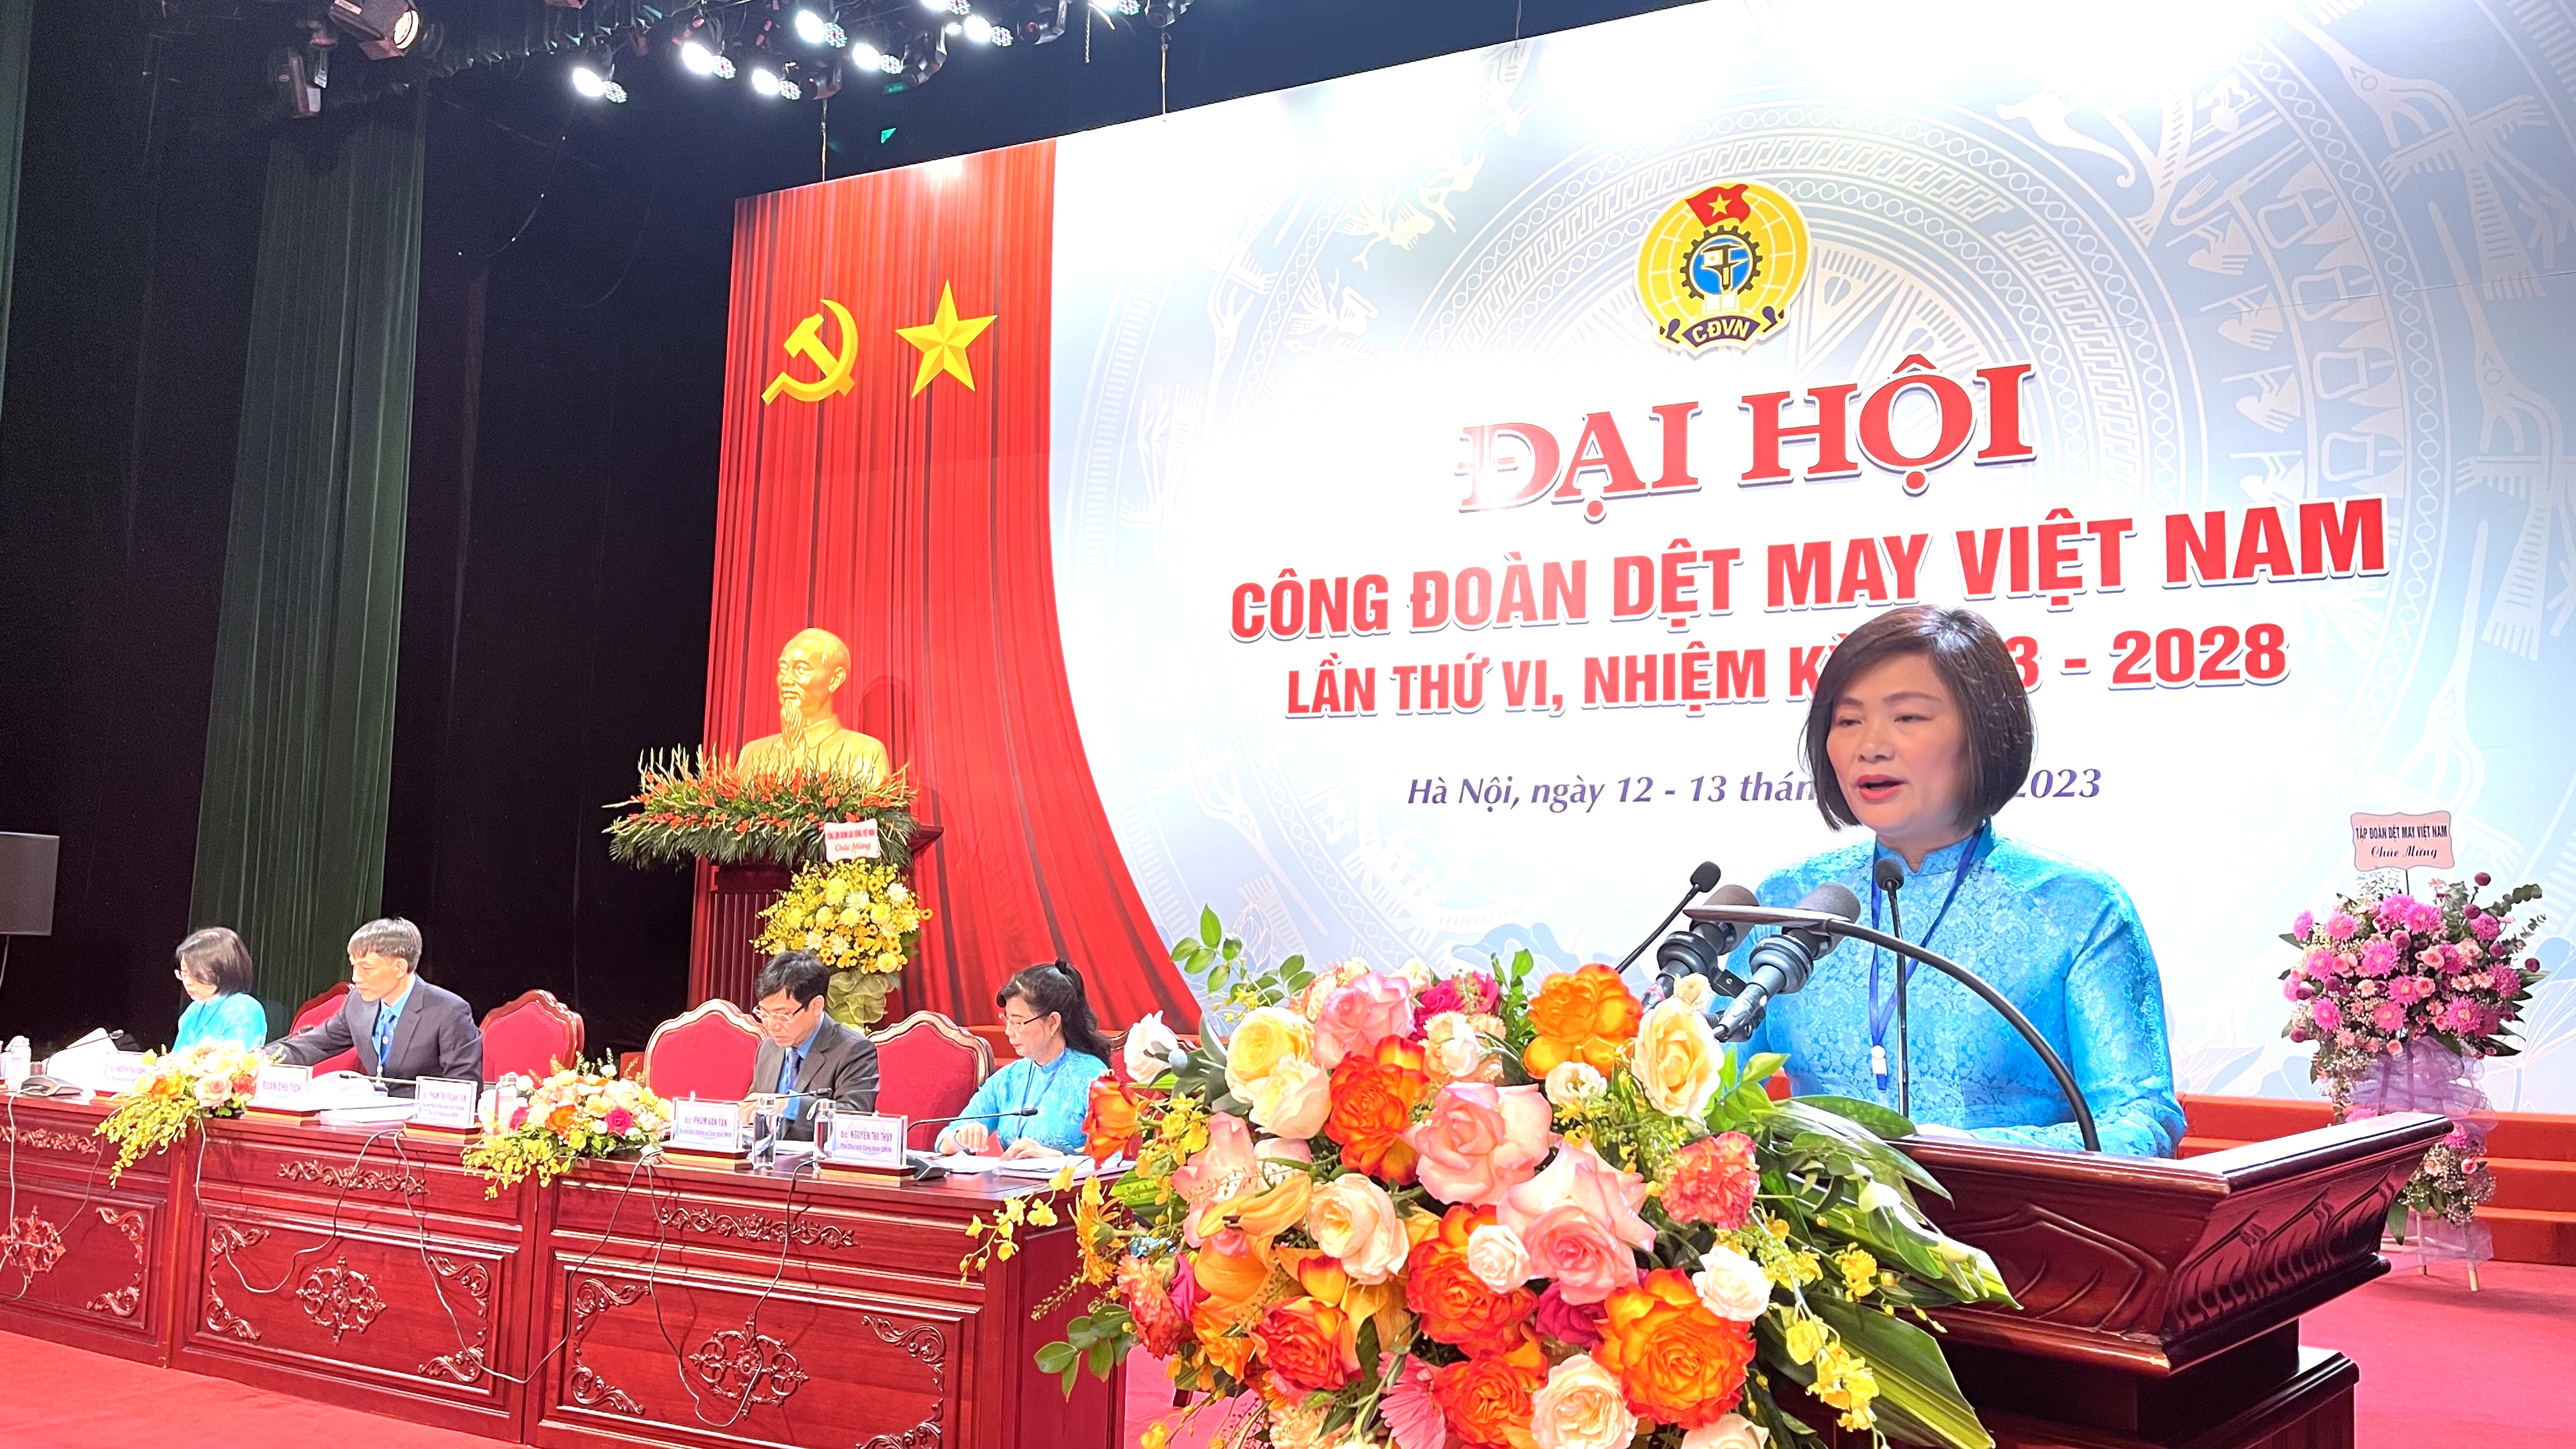 Bà Phạm Thị Thanh Tâm tái đắc cử Chủ tịch Công đoàn Dệt may Việt Nam khoá VI